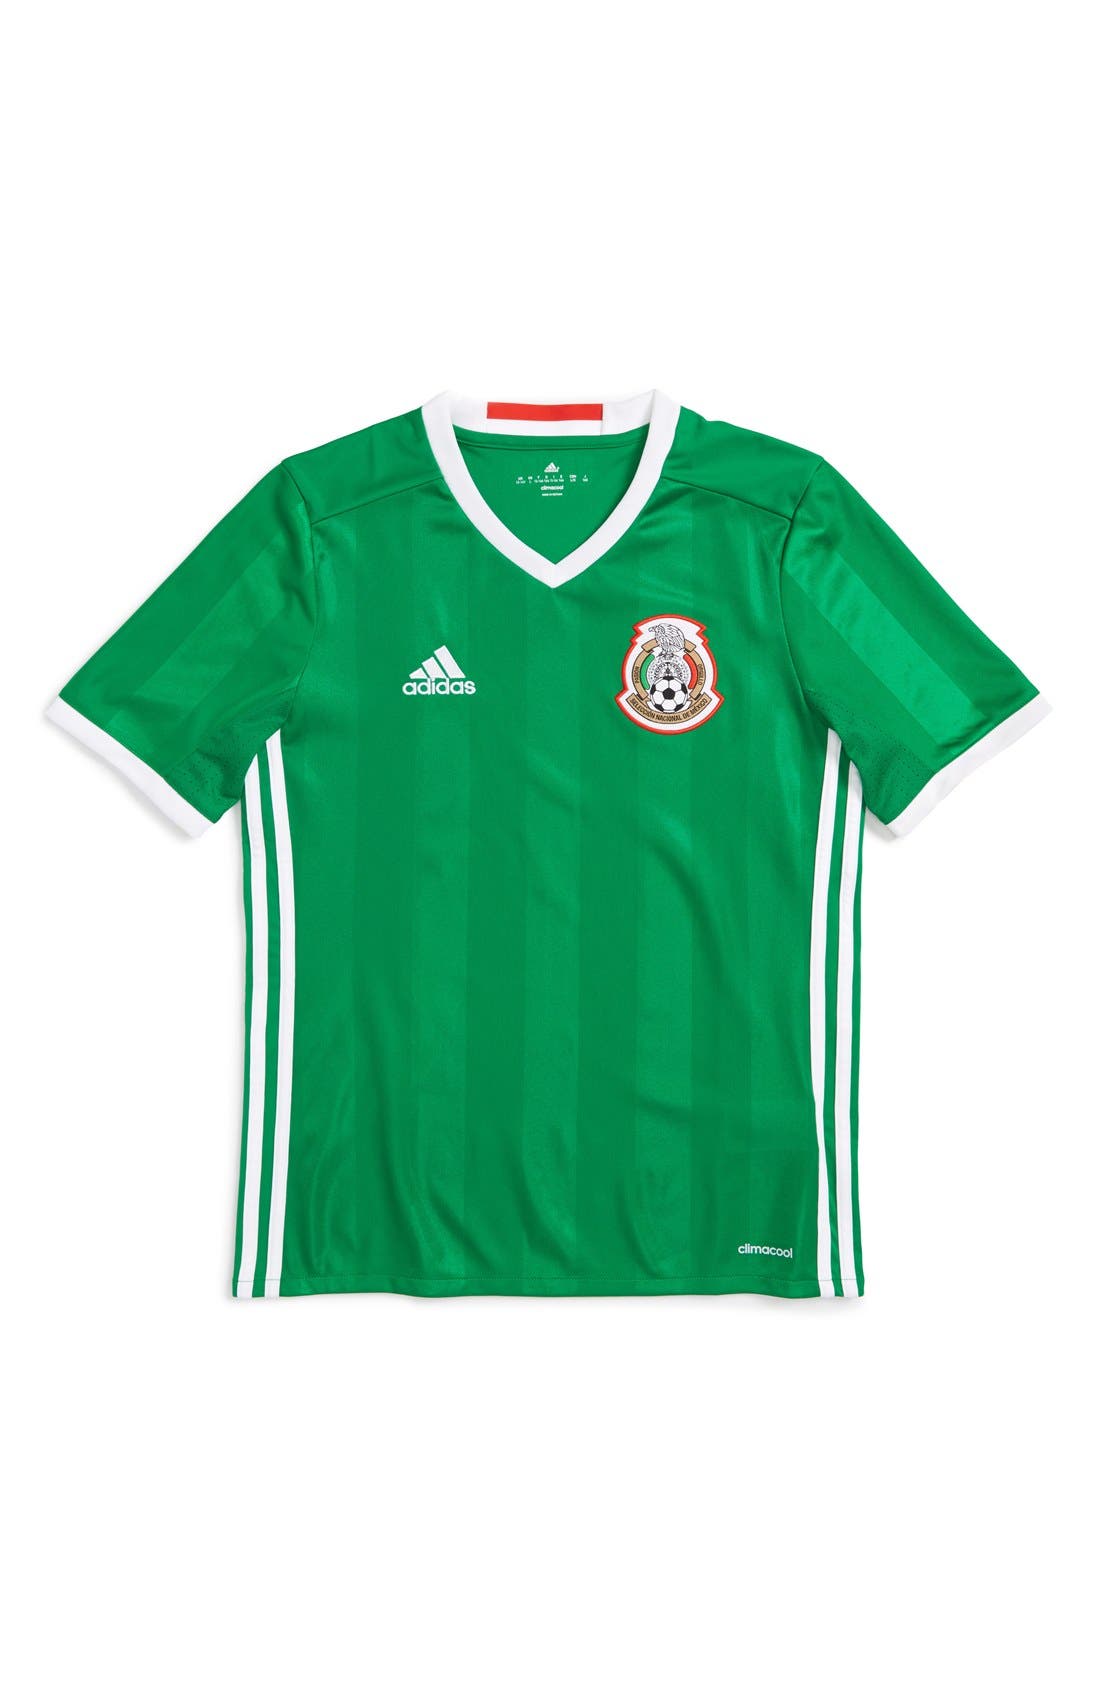 adidas 'Mexico - Home' Replica Soccer 